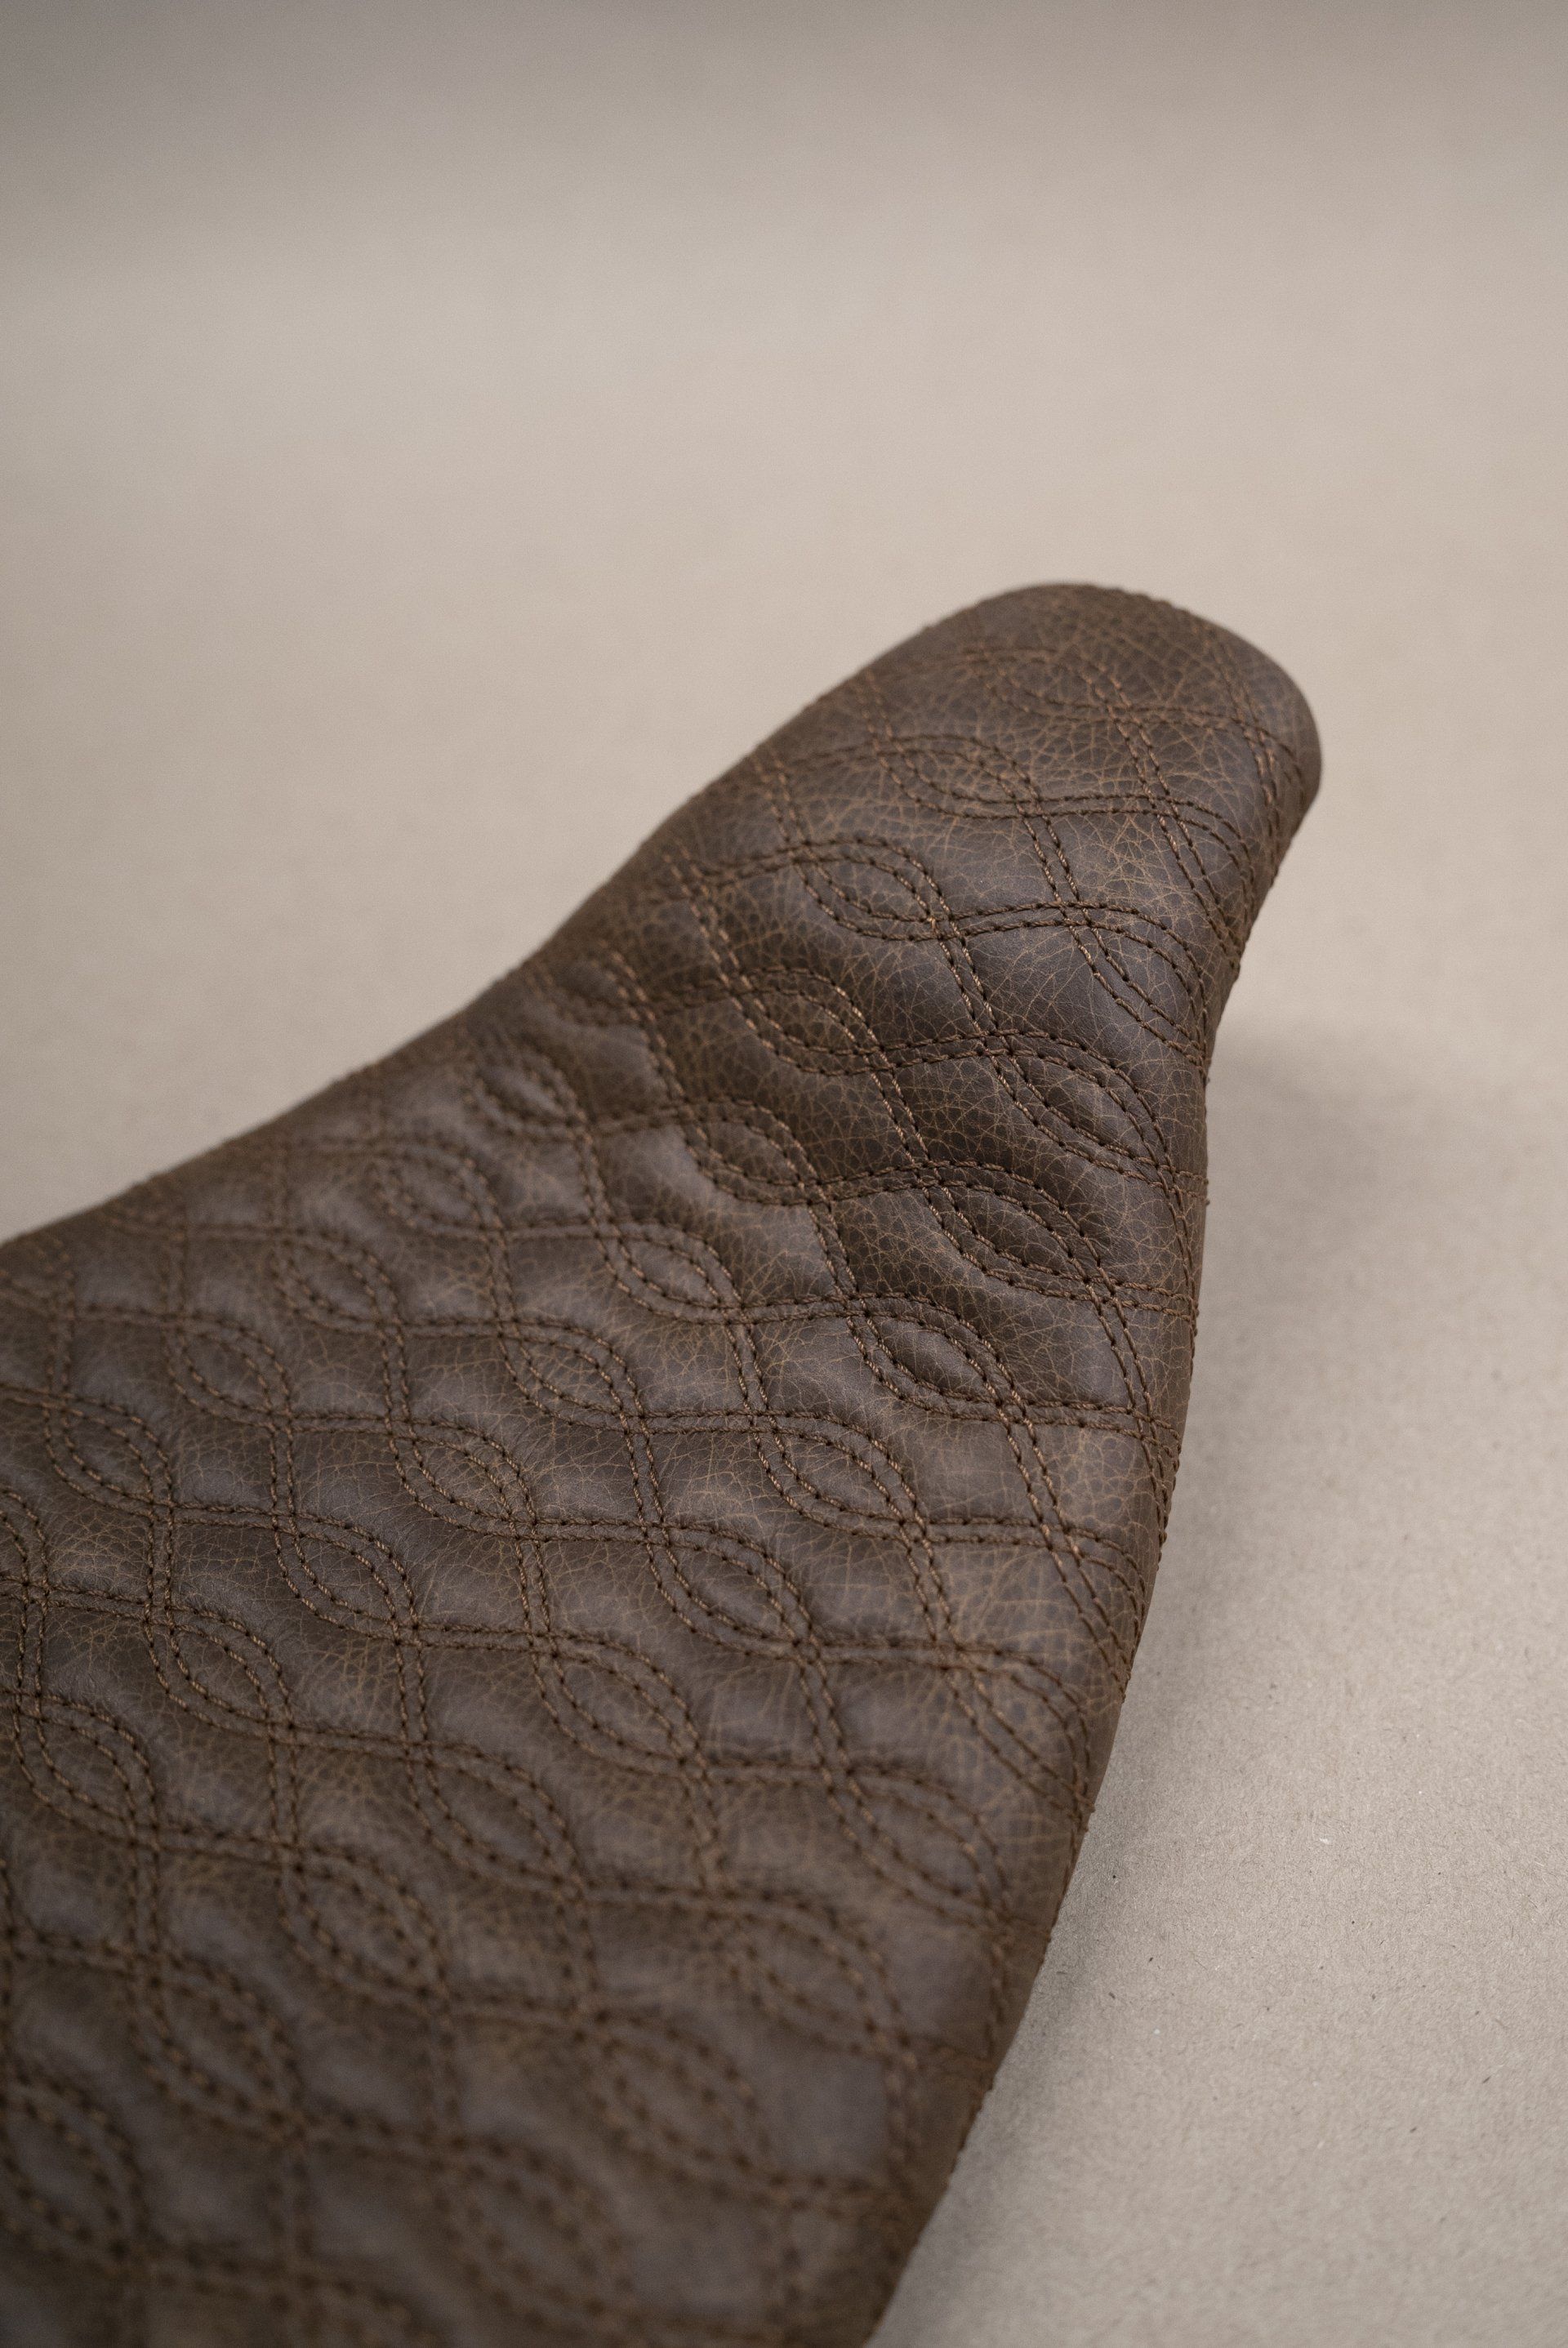 motorbike motor bike seat retrim leather distressed cnc pattern stitch stitching